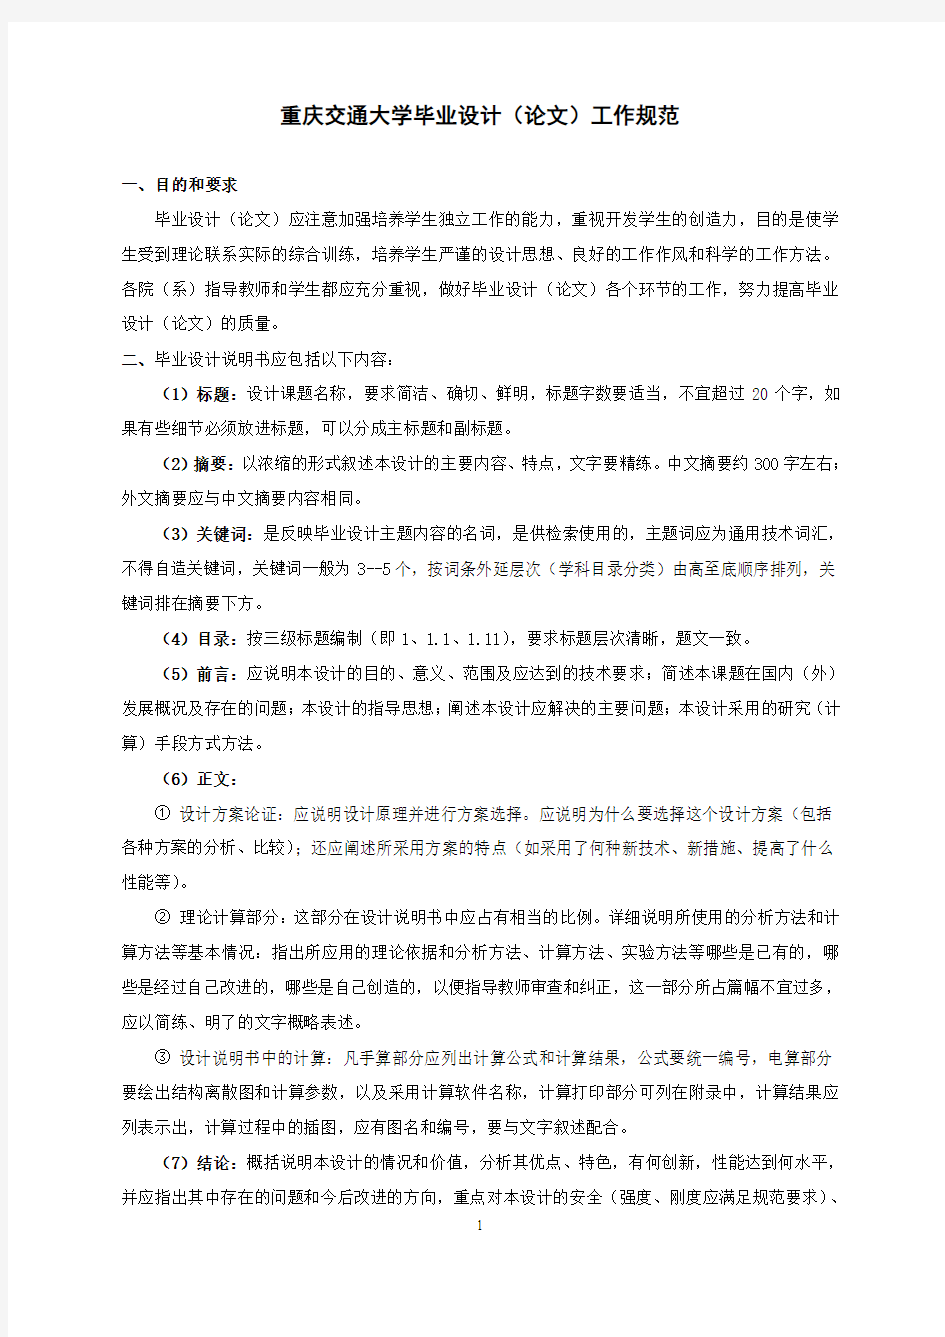 重庆交通大学毕业设计(论文)工作规范